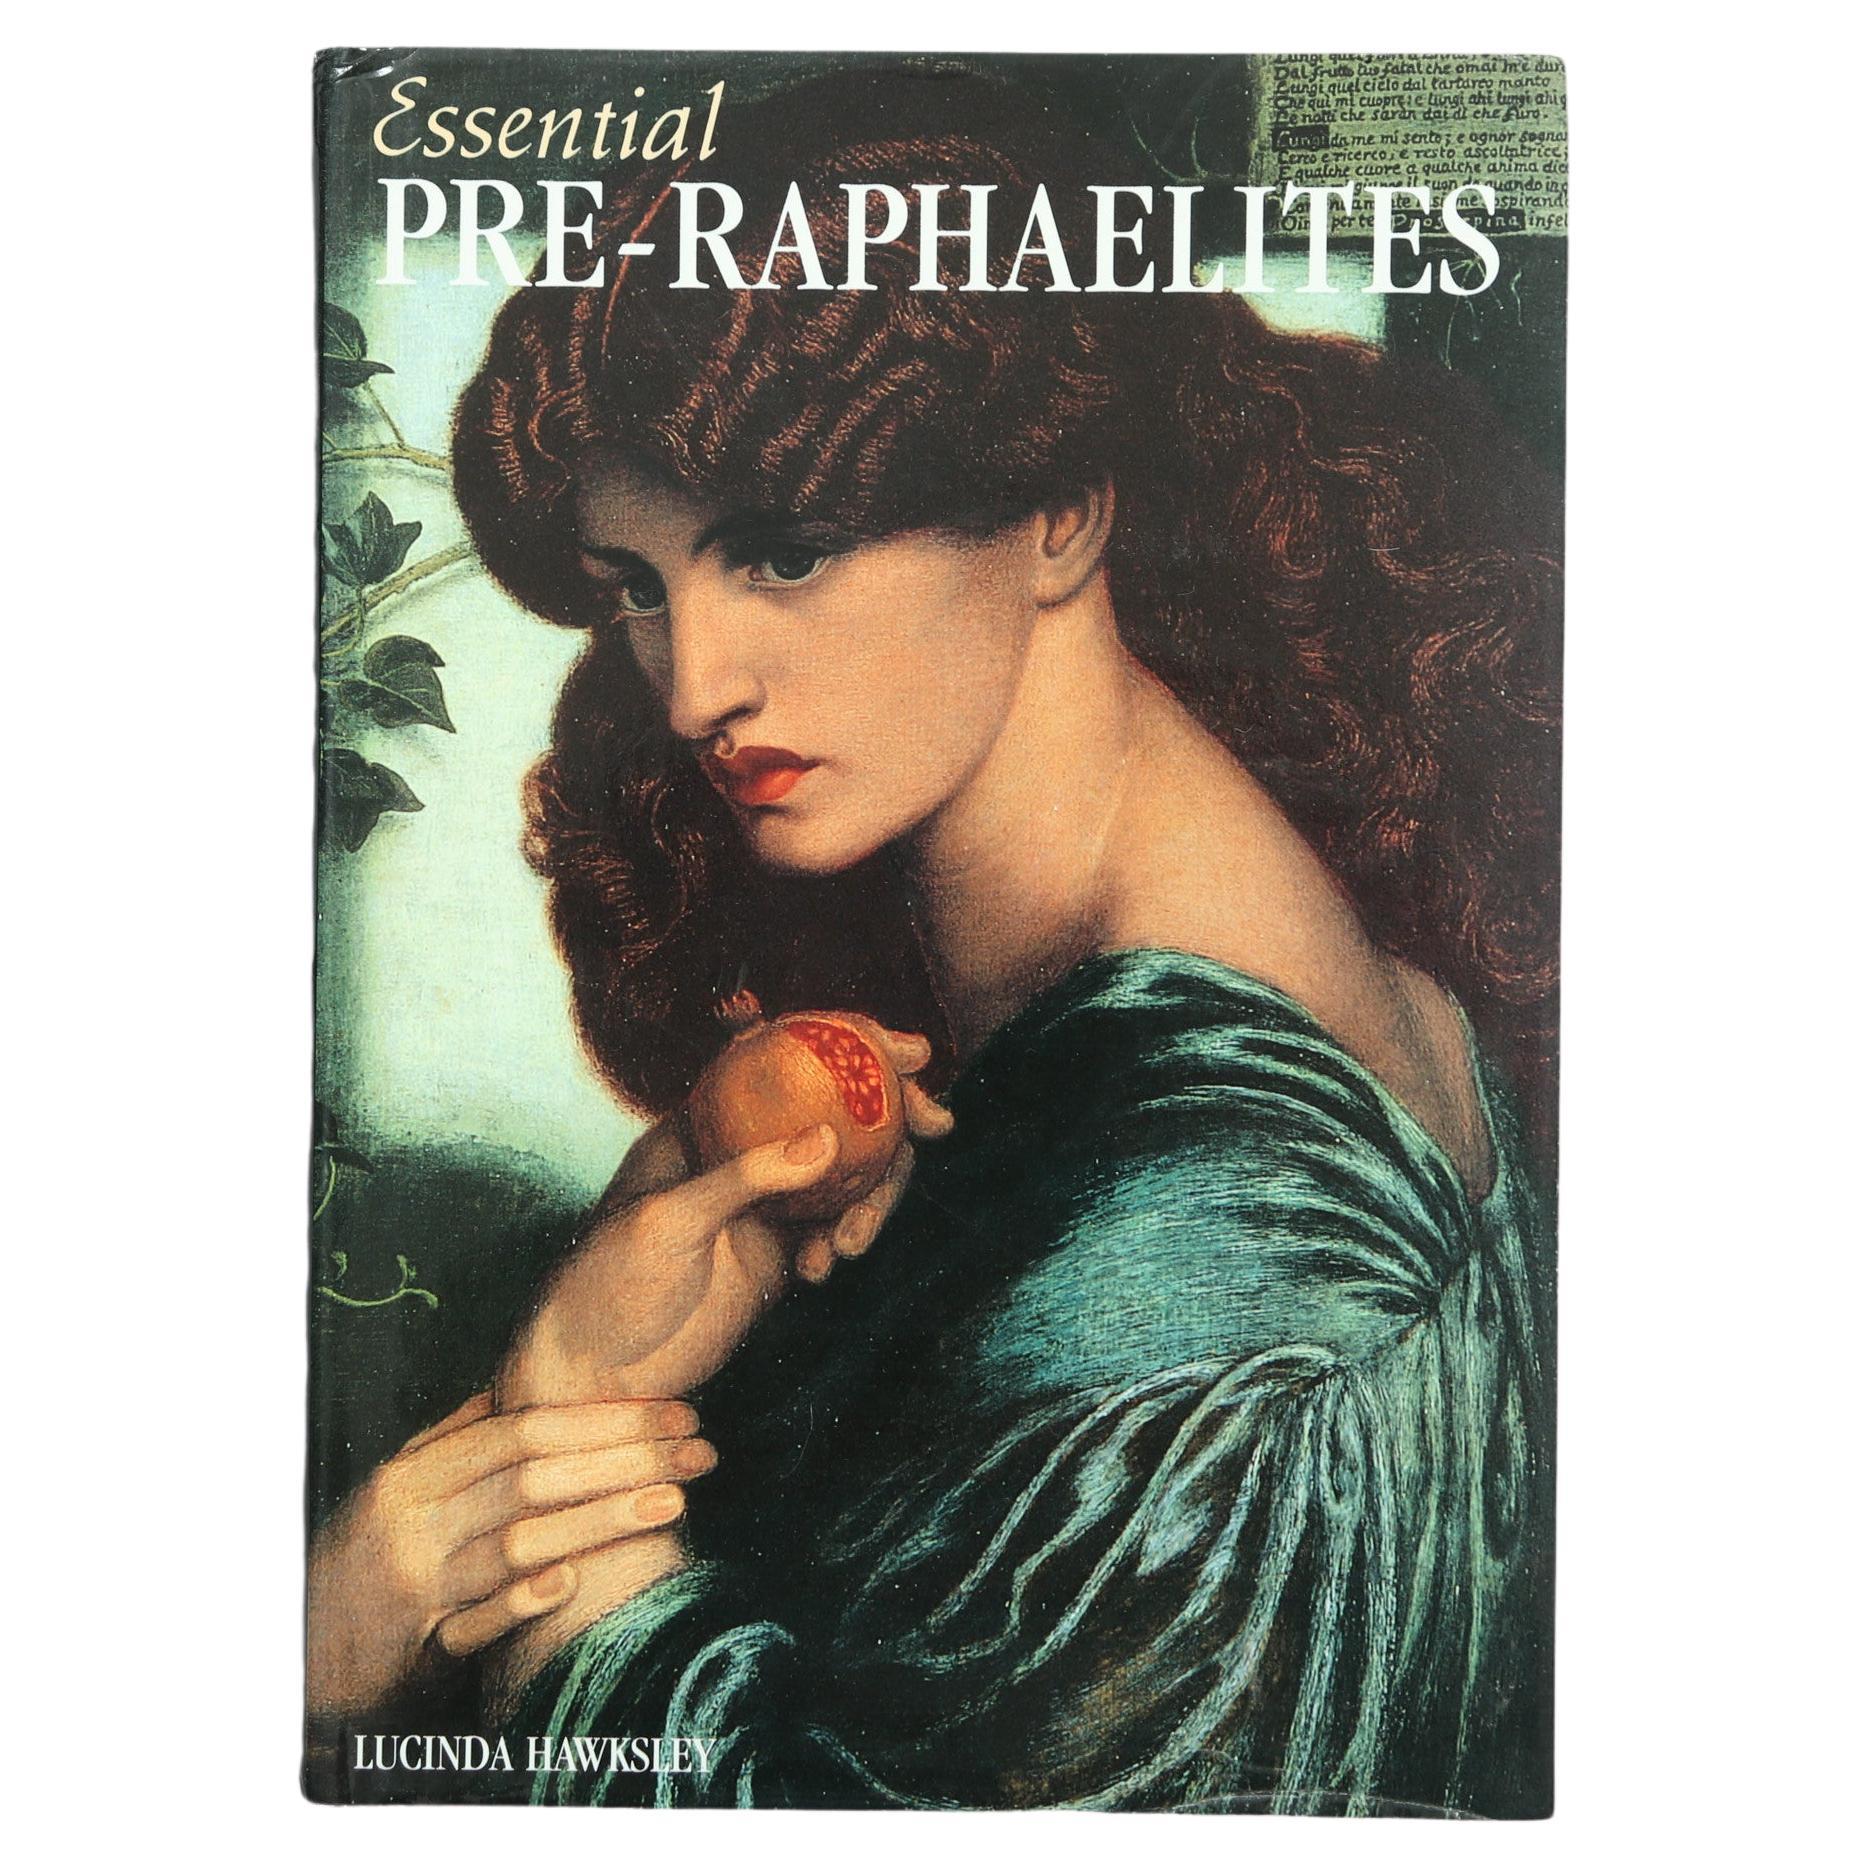 Essential Pre-Raphaelites by Lucinda Hawksley